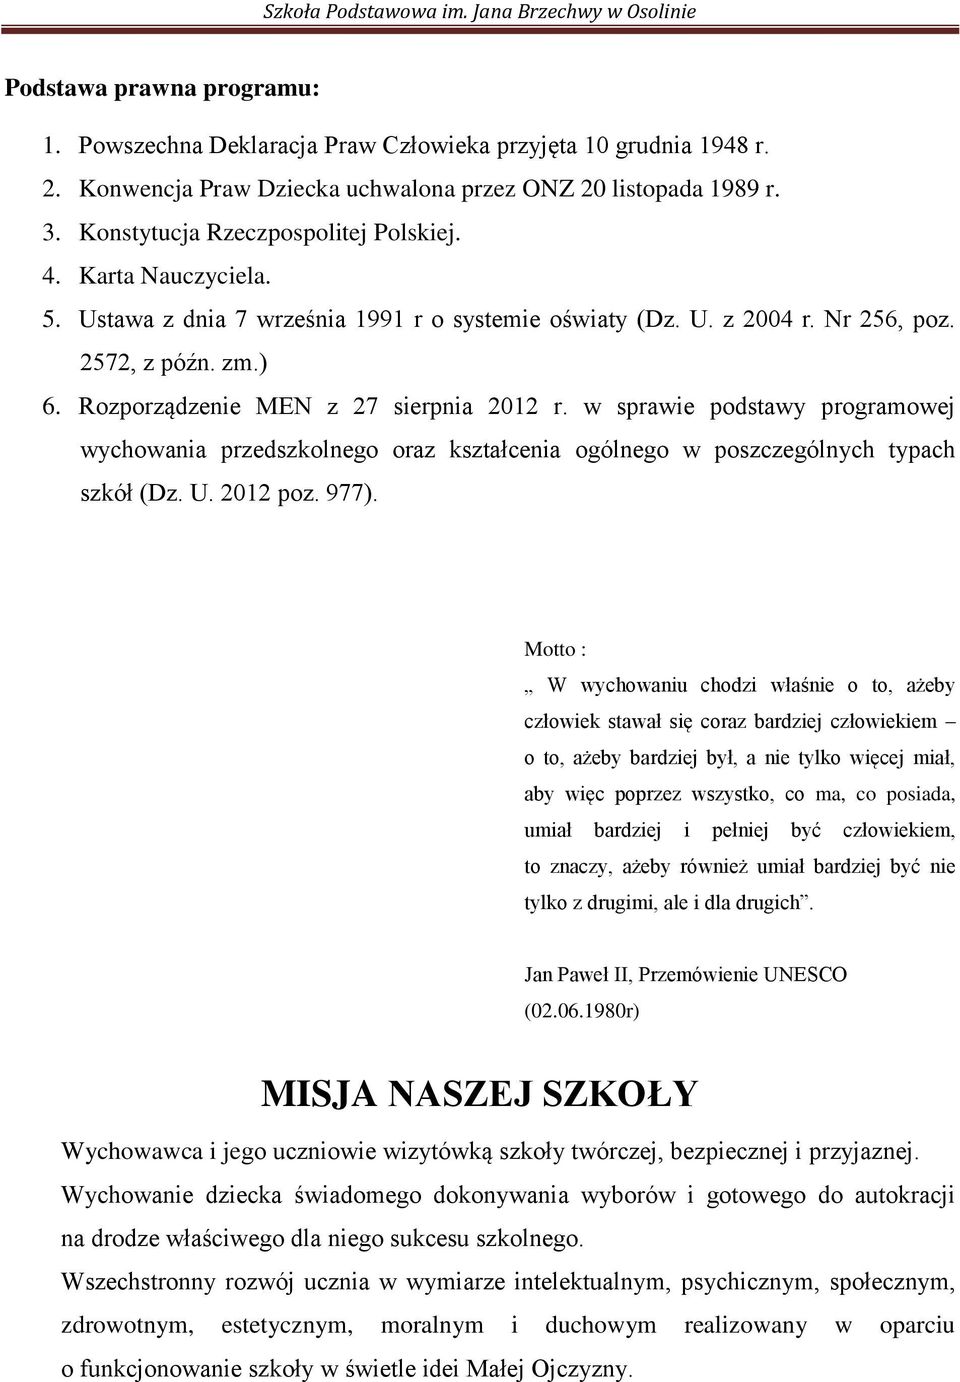 Rozporządzenie MEN z 27 sierpnia 2012 r. w sprawie podstawy programowej wychowania przedszkolnego oraz kształcenia ogólnego w poszczególnych typach szkół (Dz. U. 2012 poz. 977).